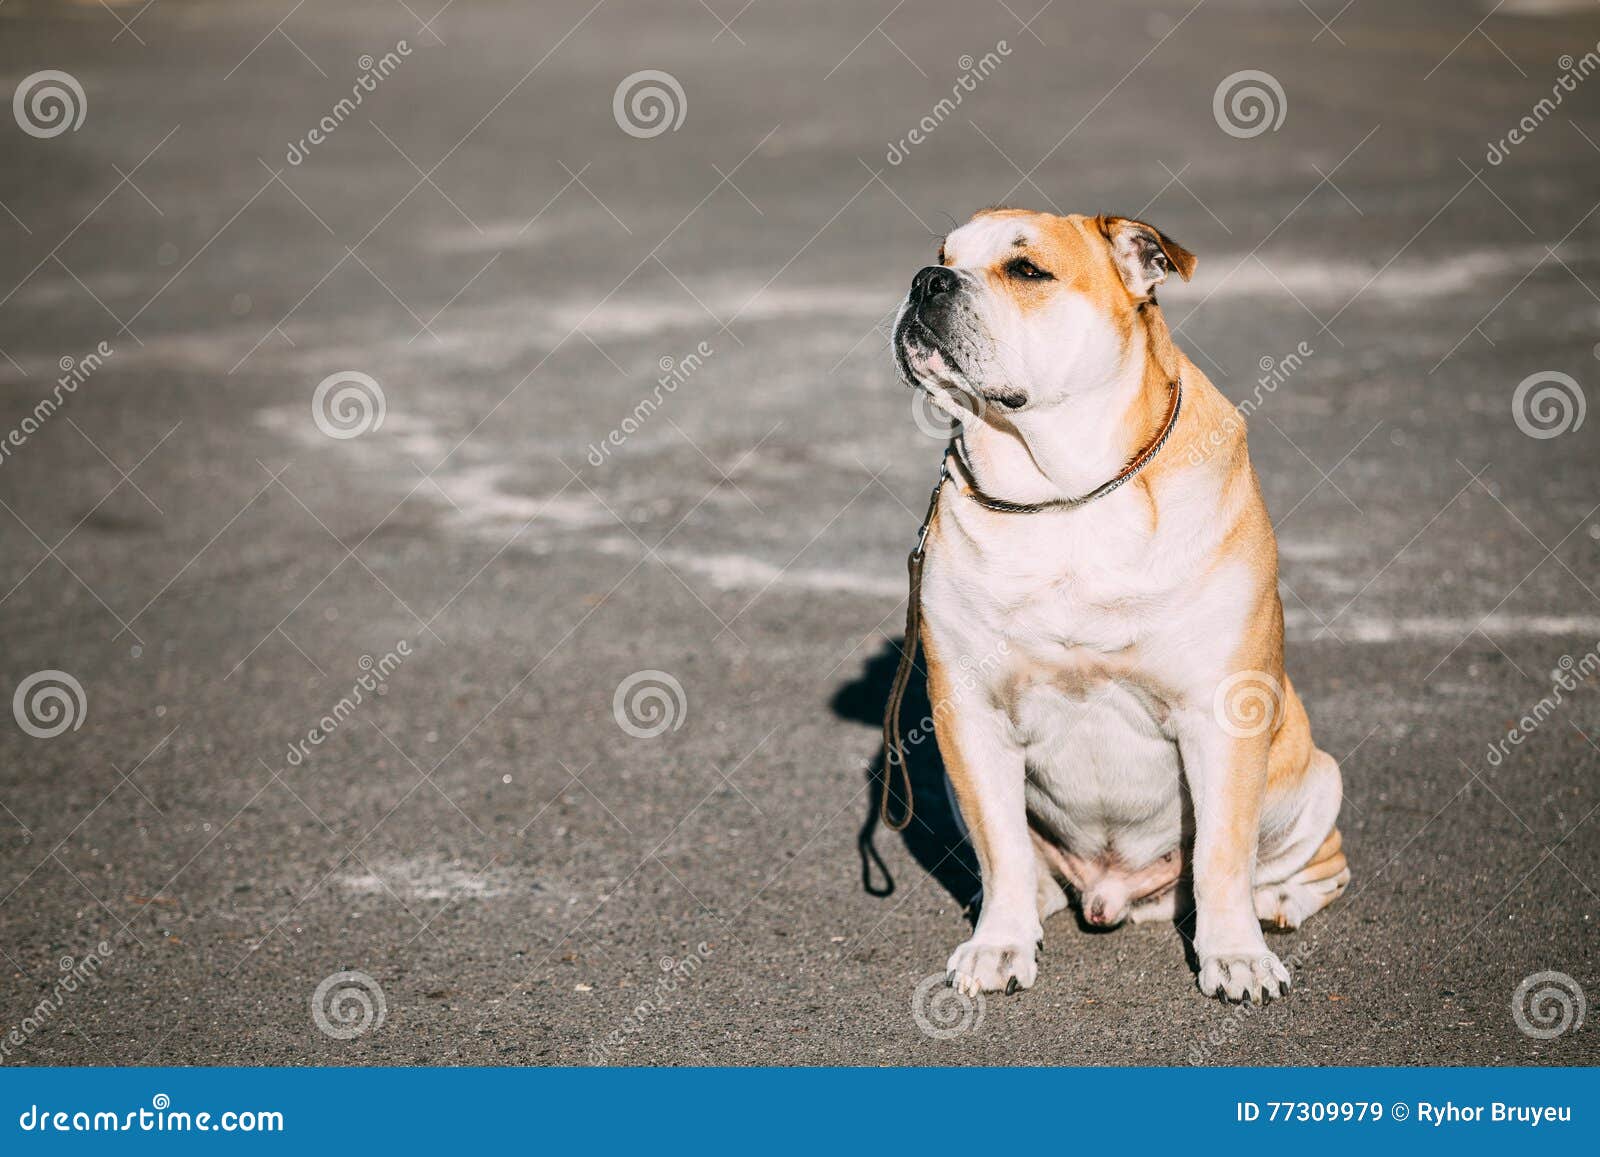 pretty ca de bou or perro de presa mallorquin is a typical molossian dog